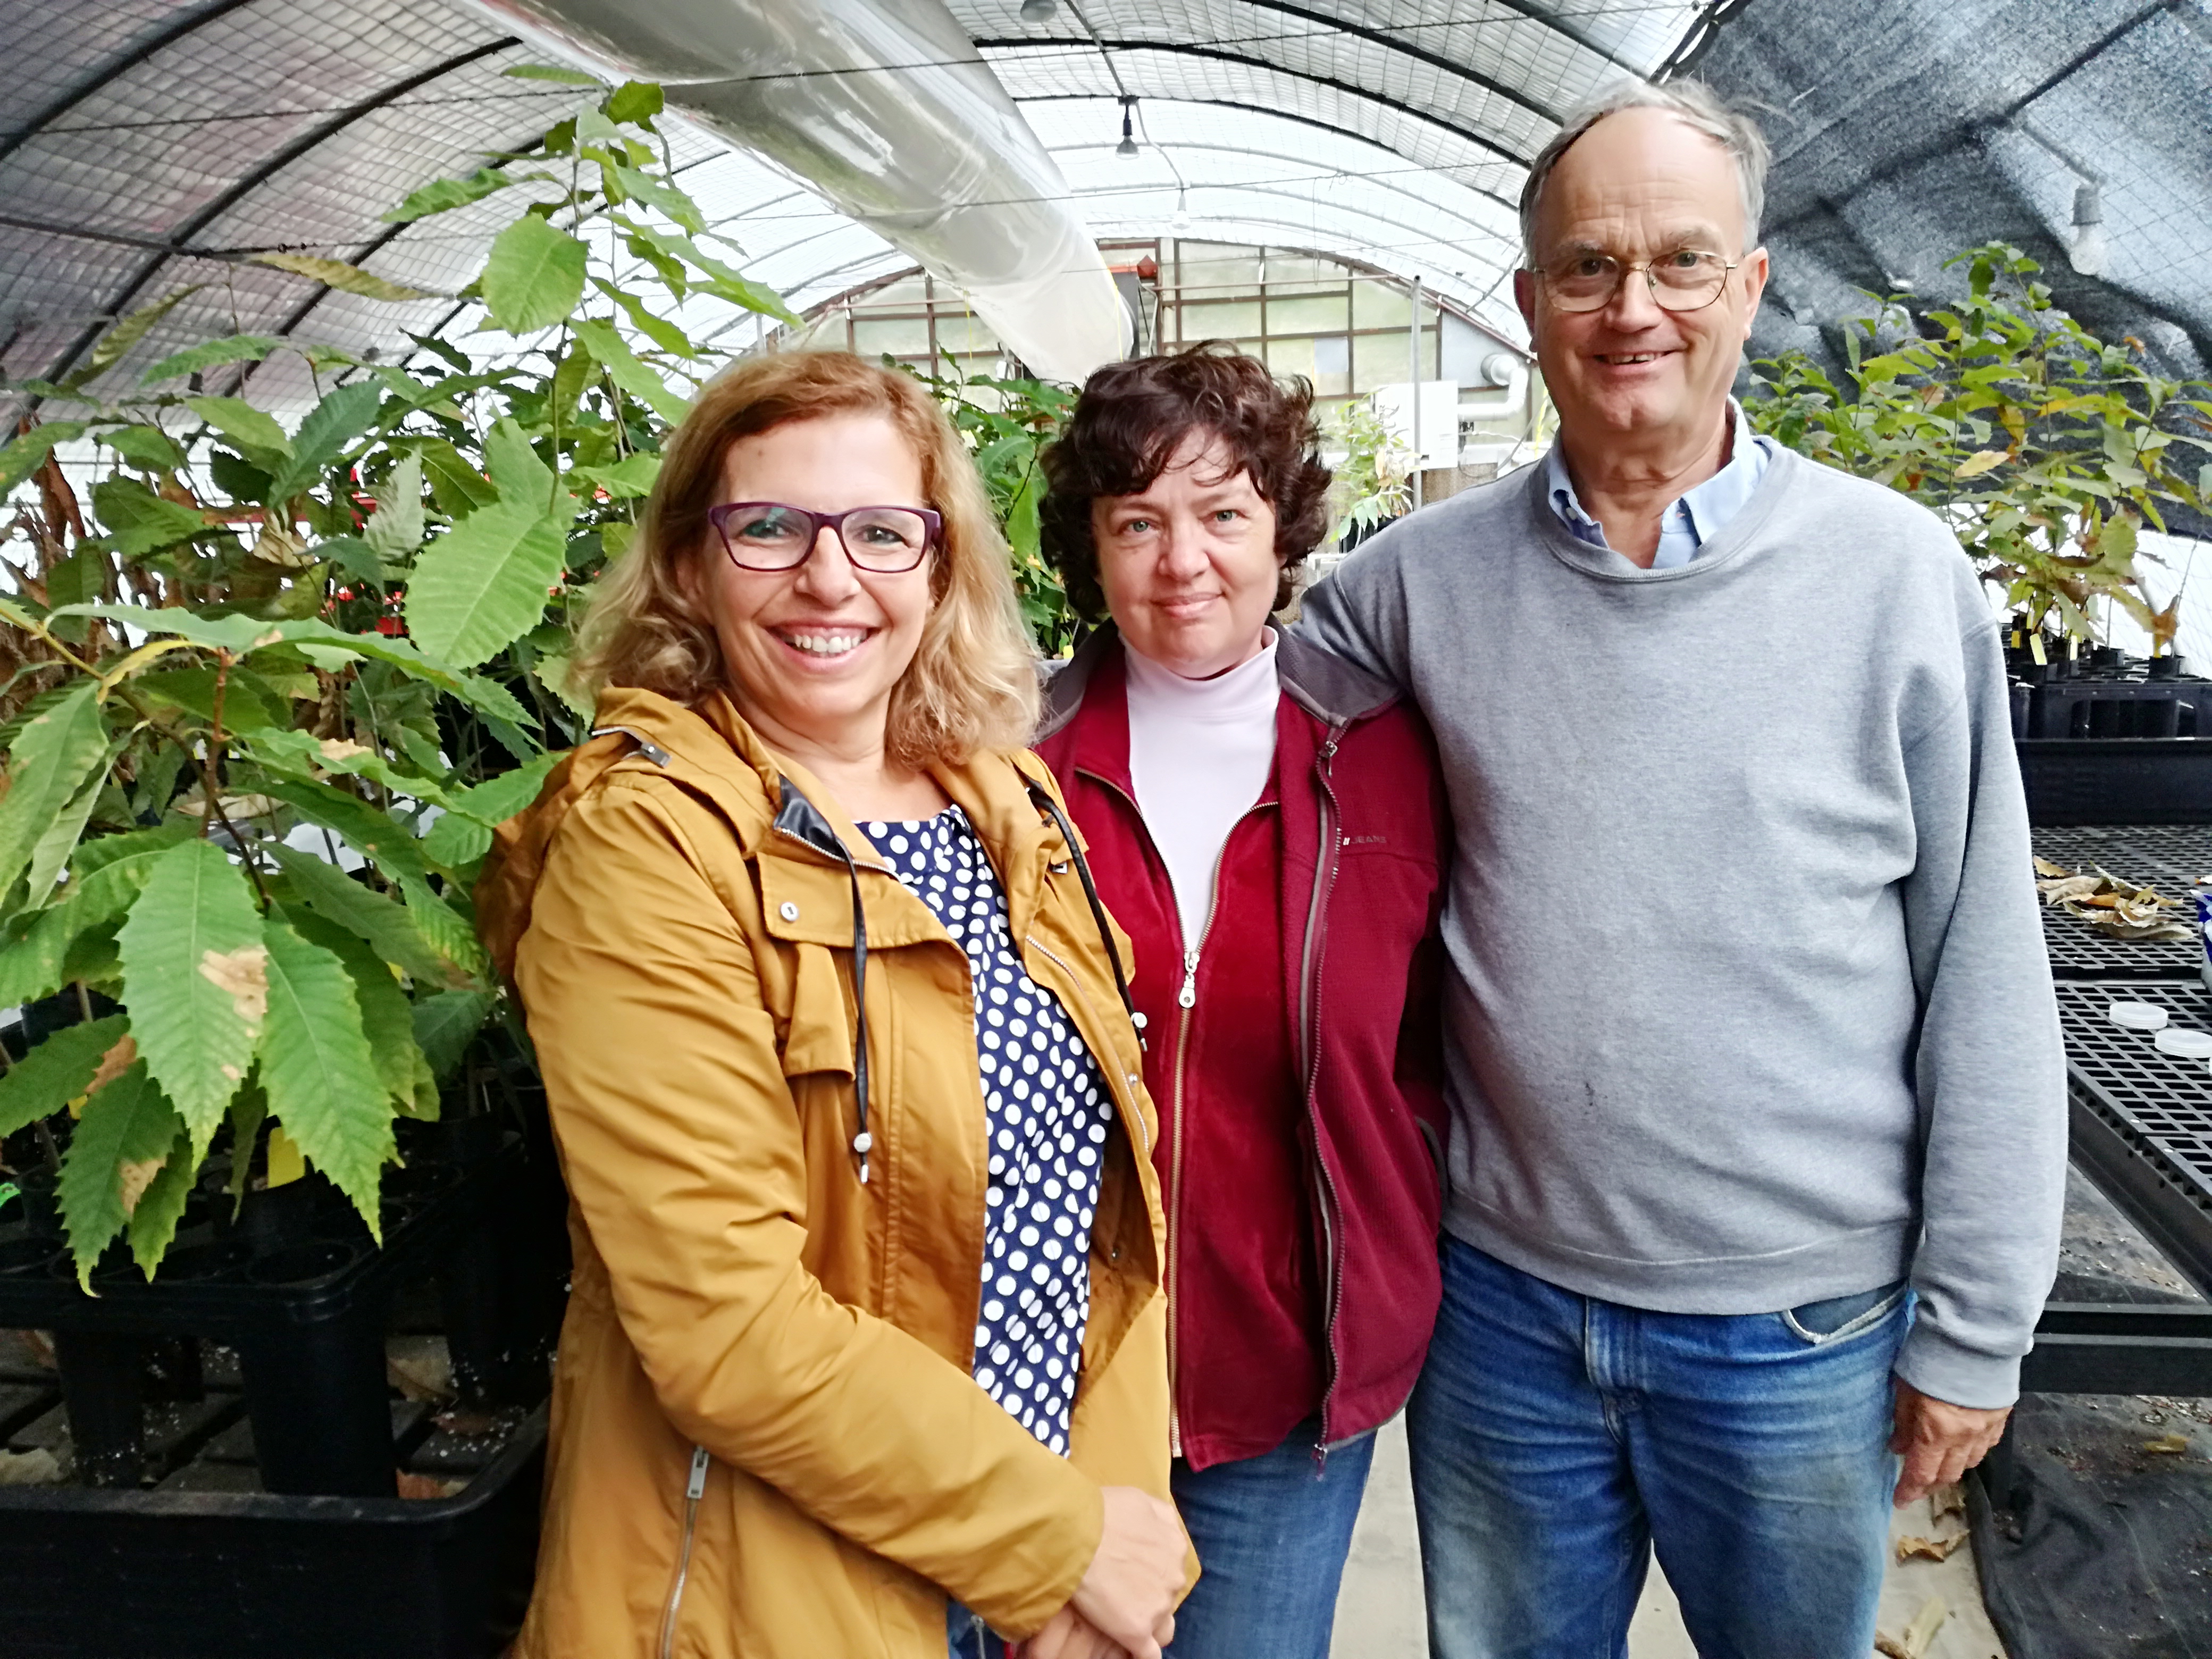 Rita Costa, Tatyana Zhebentyayeva and Paul Sisco at Bent Creek greenhouse